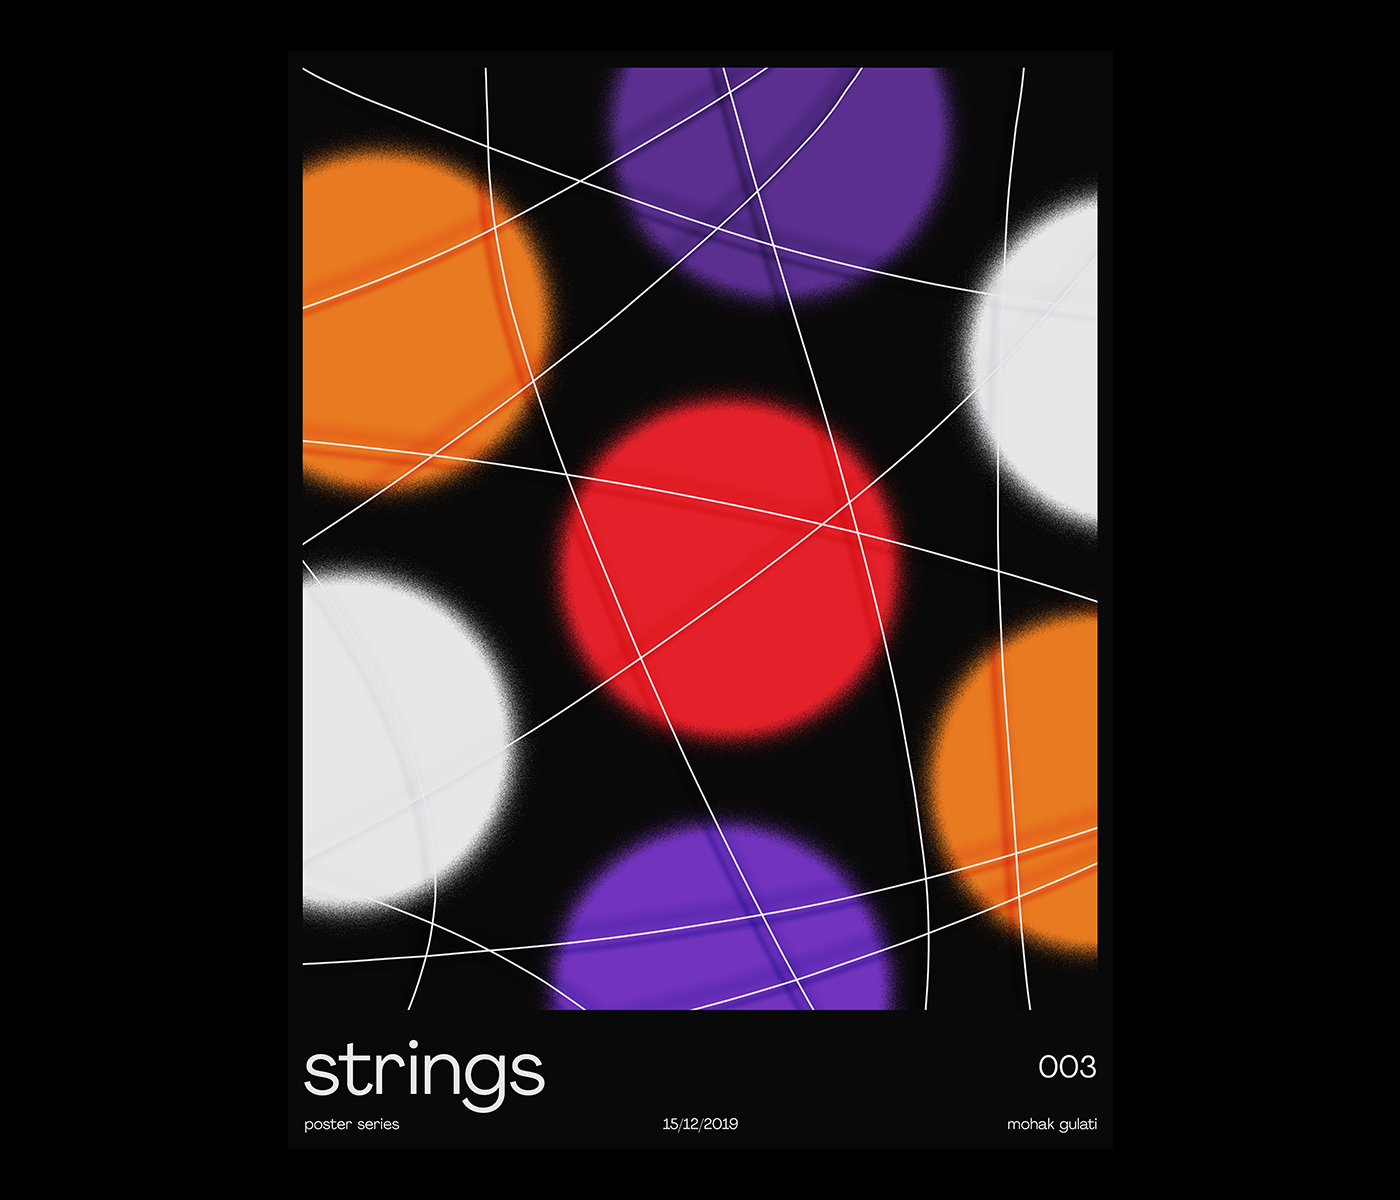 strings poster print Poster Design composition Piet Mondiran de stijl neo-plasticism Poster series